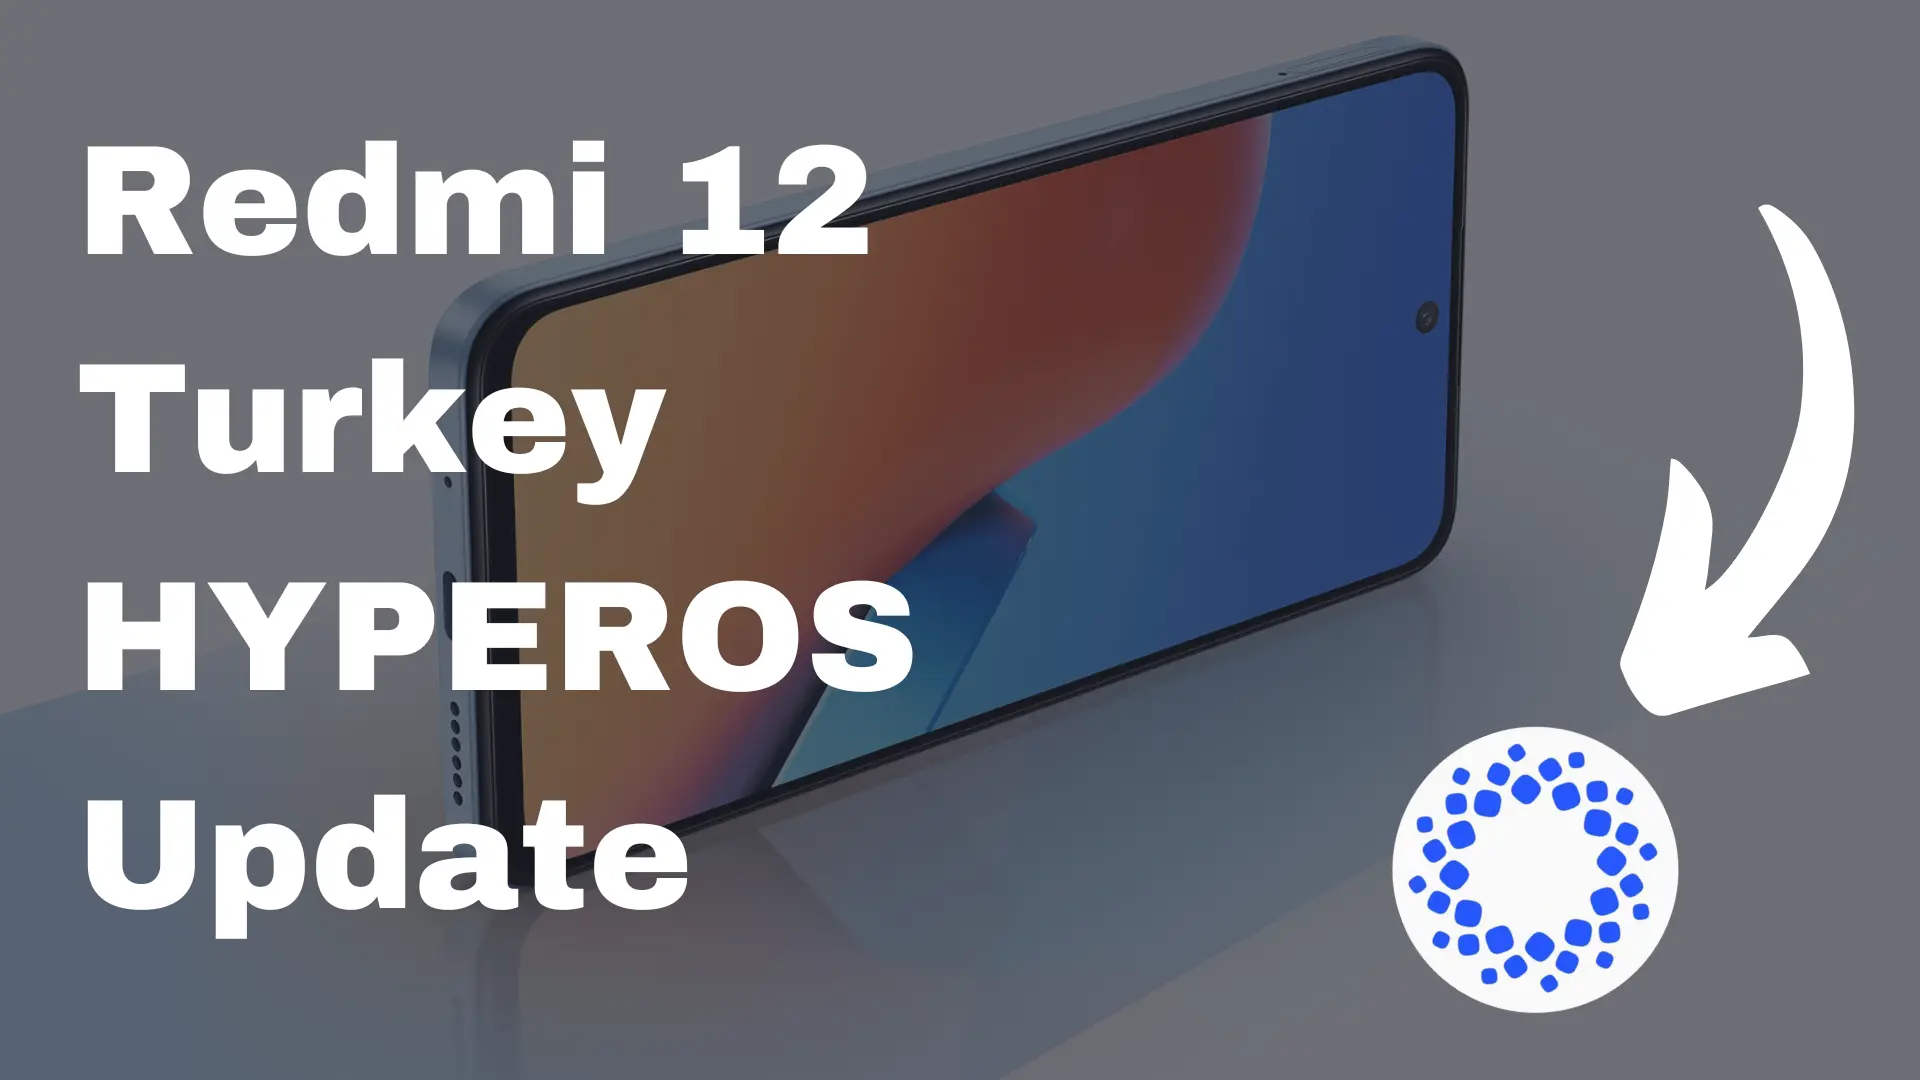 Redmi 12 Turkey HYPEROS Update stable version